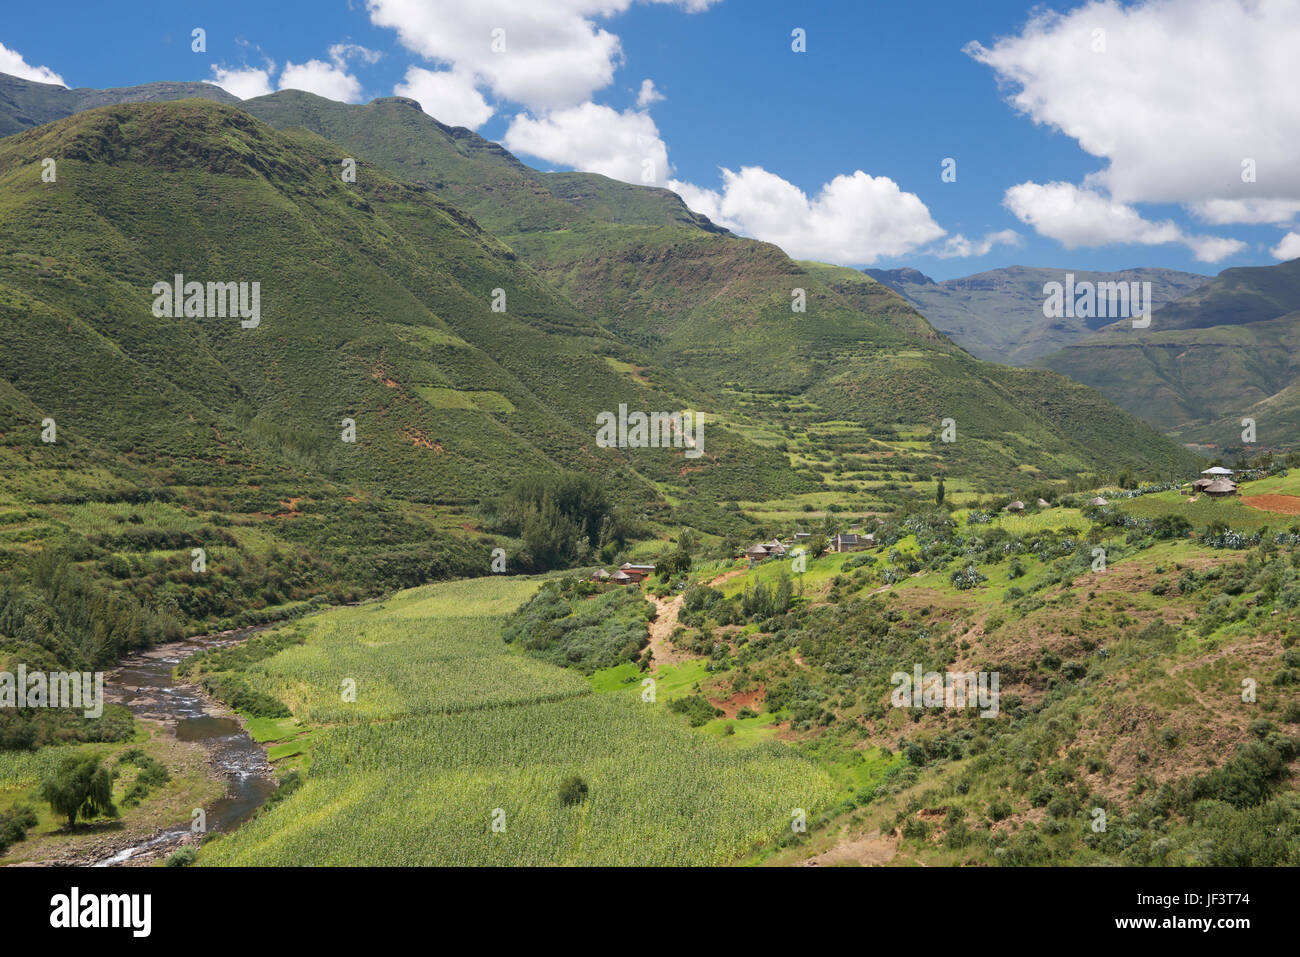 La vallée de la rivière Hlotse fertile district de Leribe Lesotho Afrique du Sud Banque D'Images